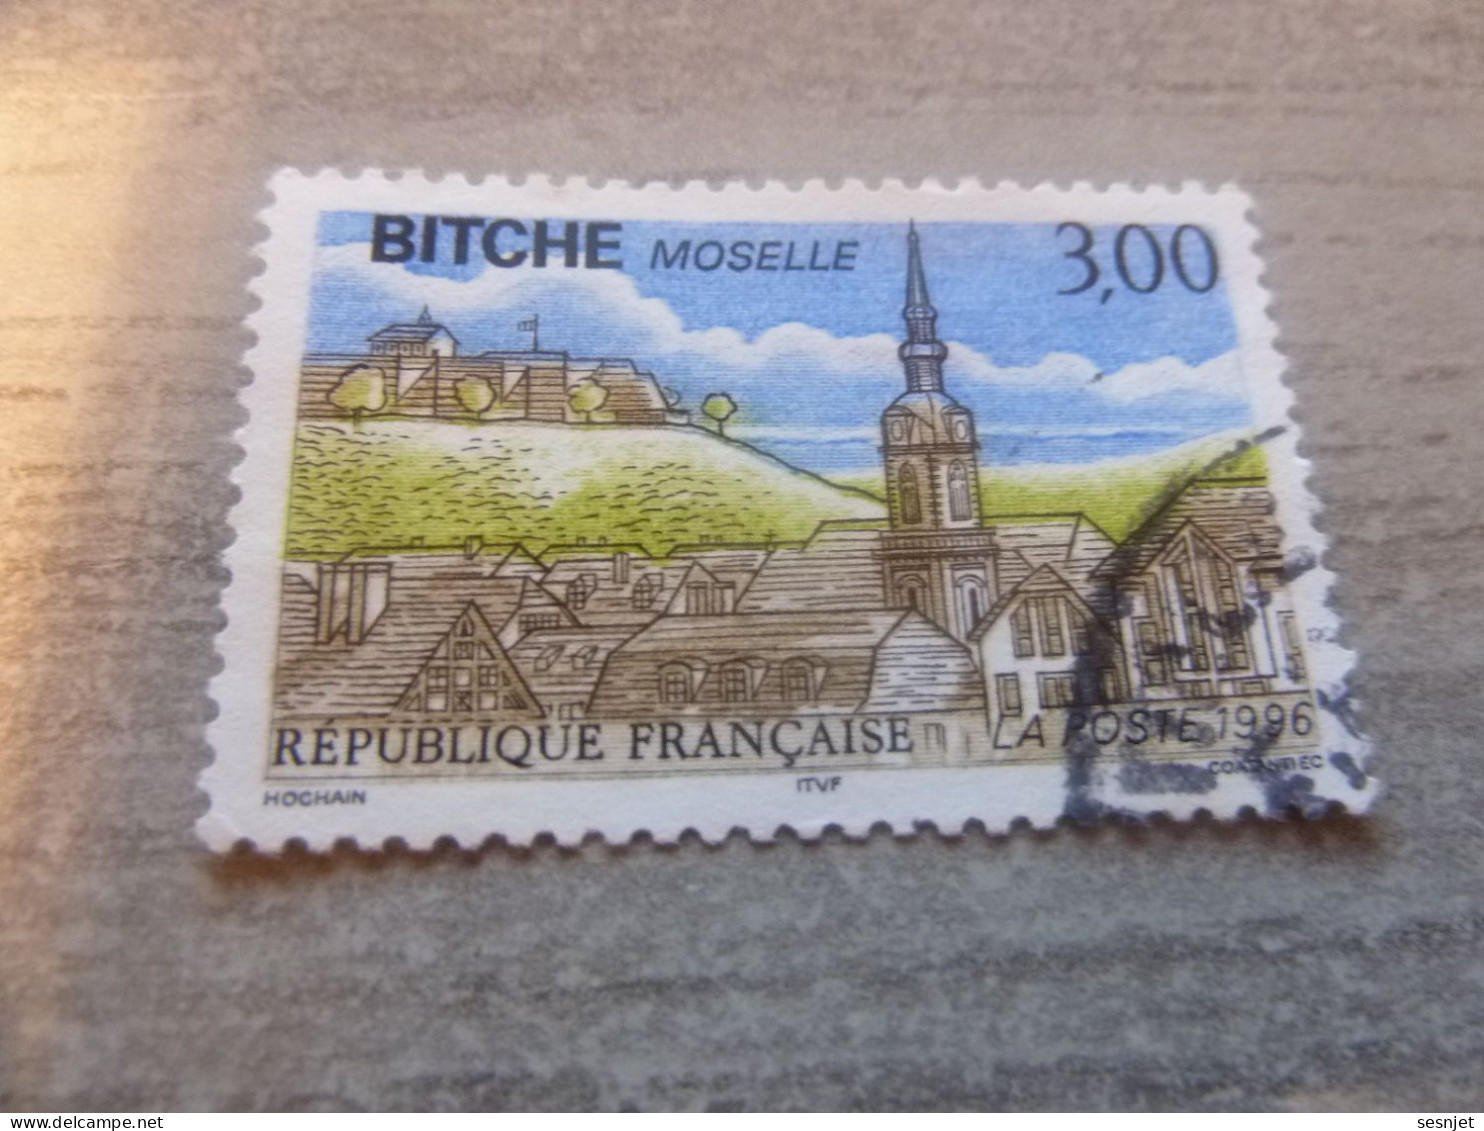 Bitche - Moselle - 3f. - Yt 3018 - Multicolore - Oblitéré - Année 1996 - - Oblitérés